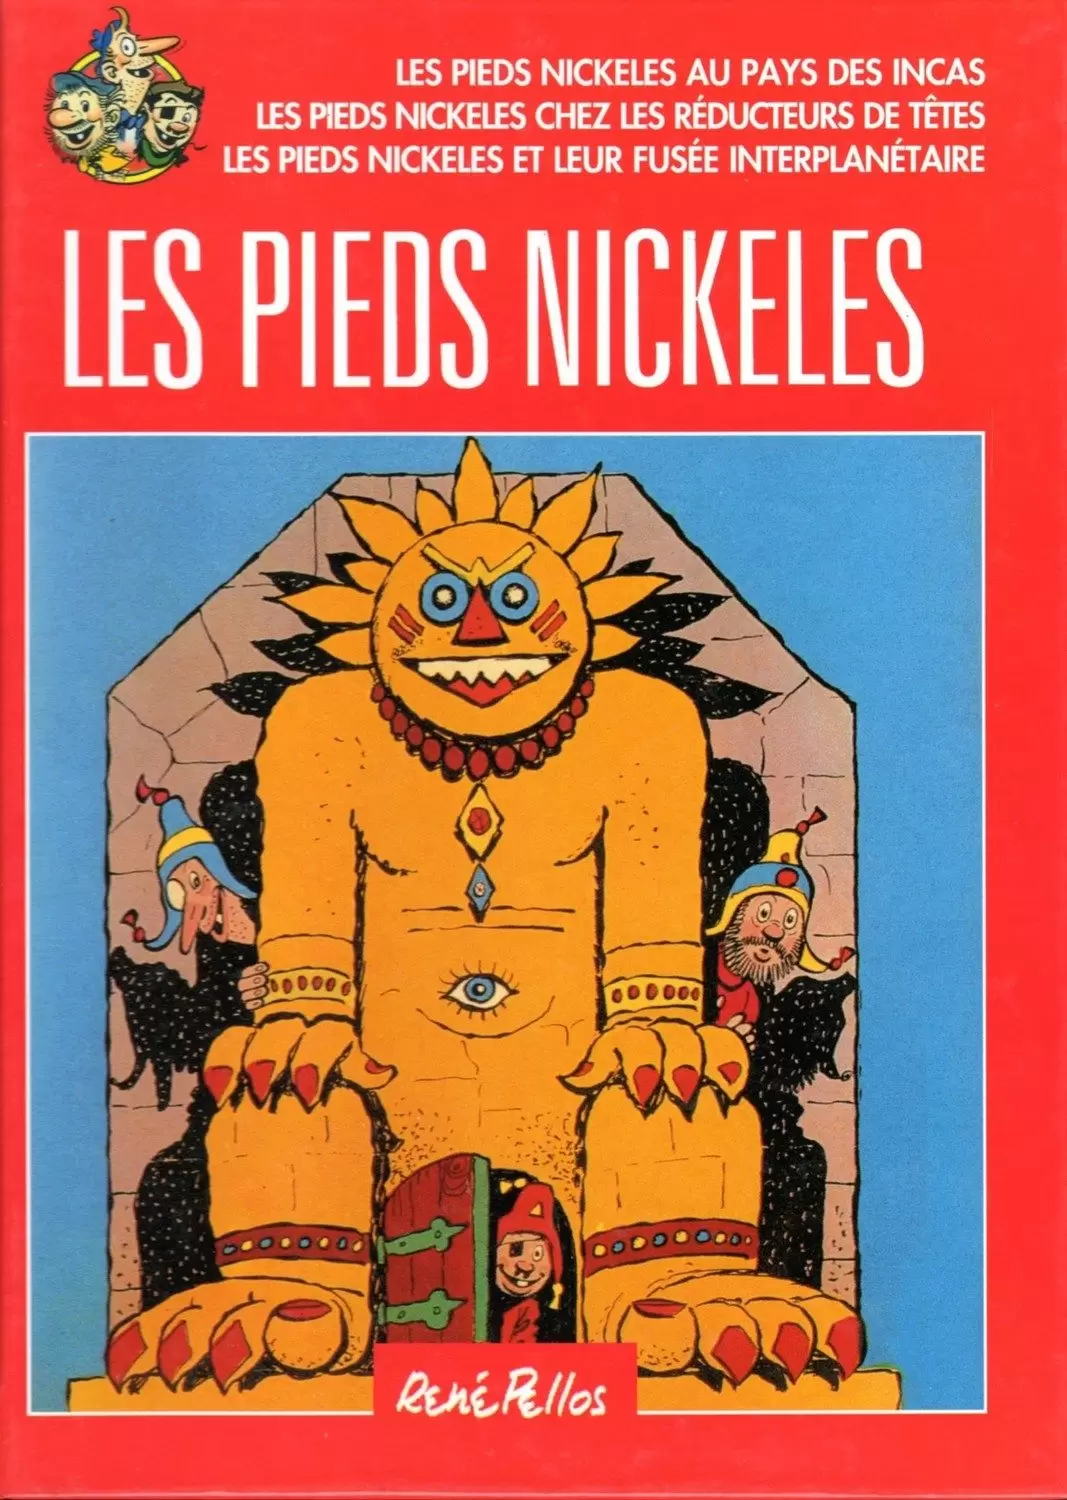 Les Pieds Nickelés - France Loisirs - Les Pieds Nickelés au pays des Incas / Les Pieds Nickelés chez les réducteurs de têtes / Les Pieds Nickelés et leur fusée interplanétaire